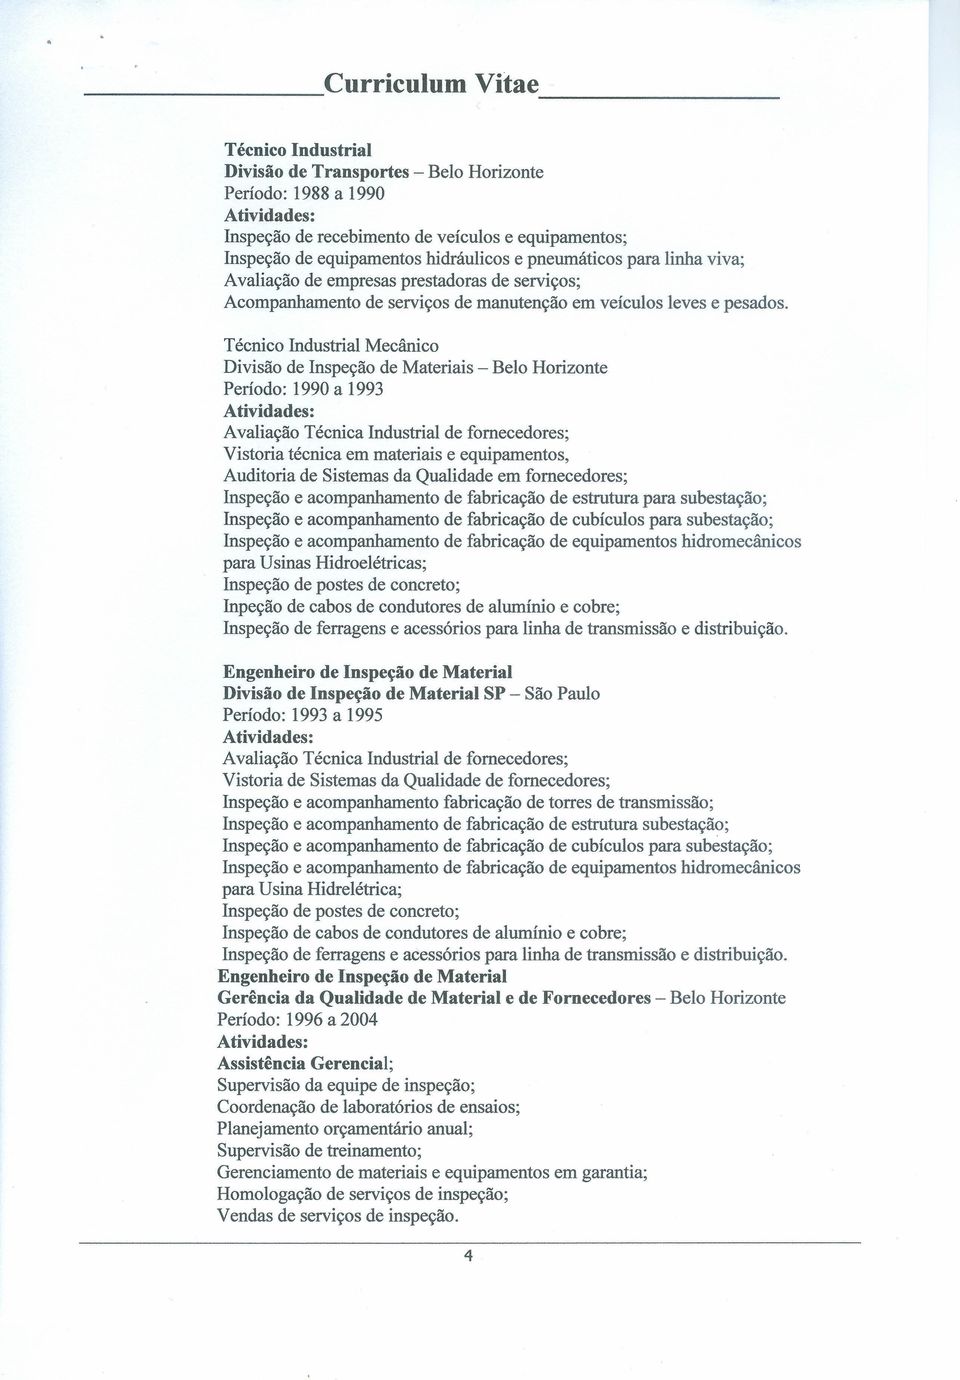 Técnico Industrial Mecânico Divisão de Inspeção de Materiais - Belo Horizonte Período: 1990 a 1993 Avaliação Técnica Industrial de fornecedores; Vistoria técnica em materiais e equipamentos,